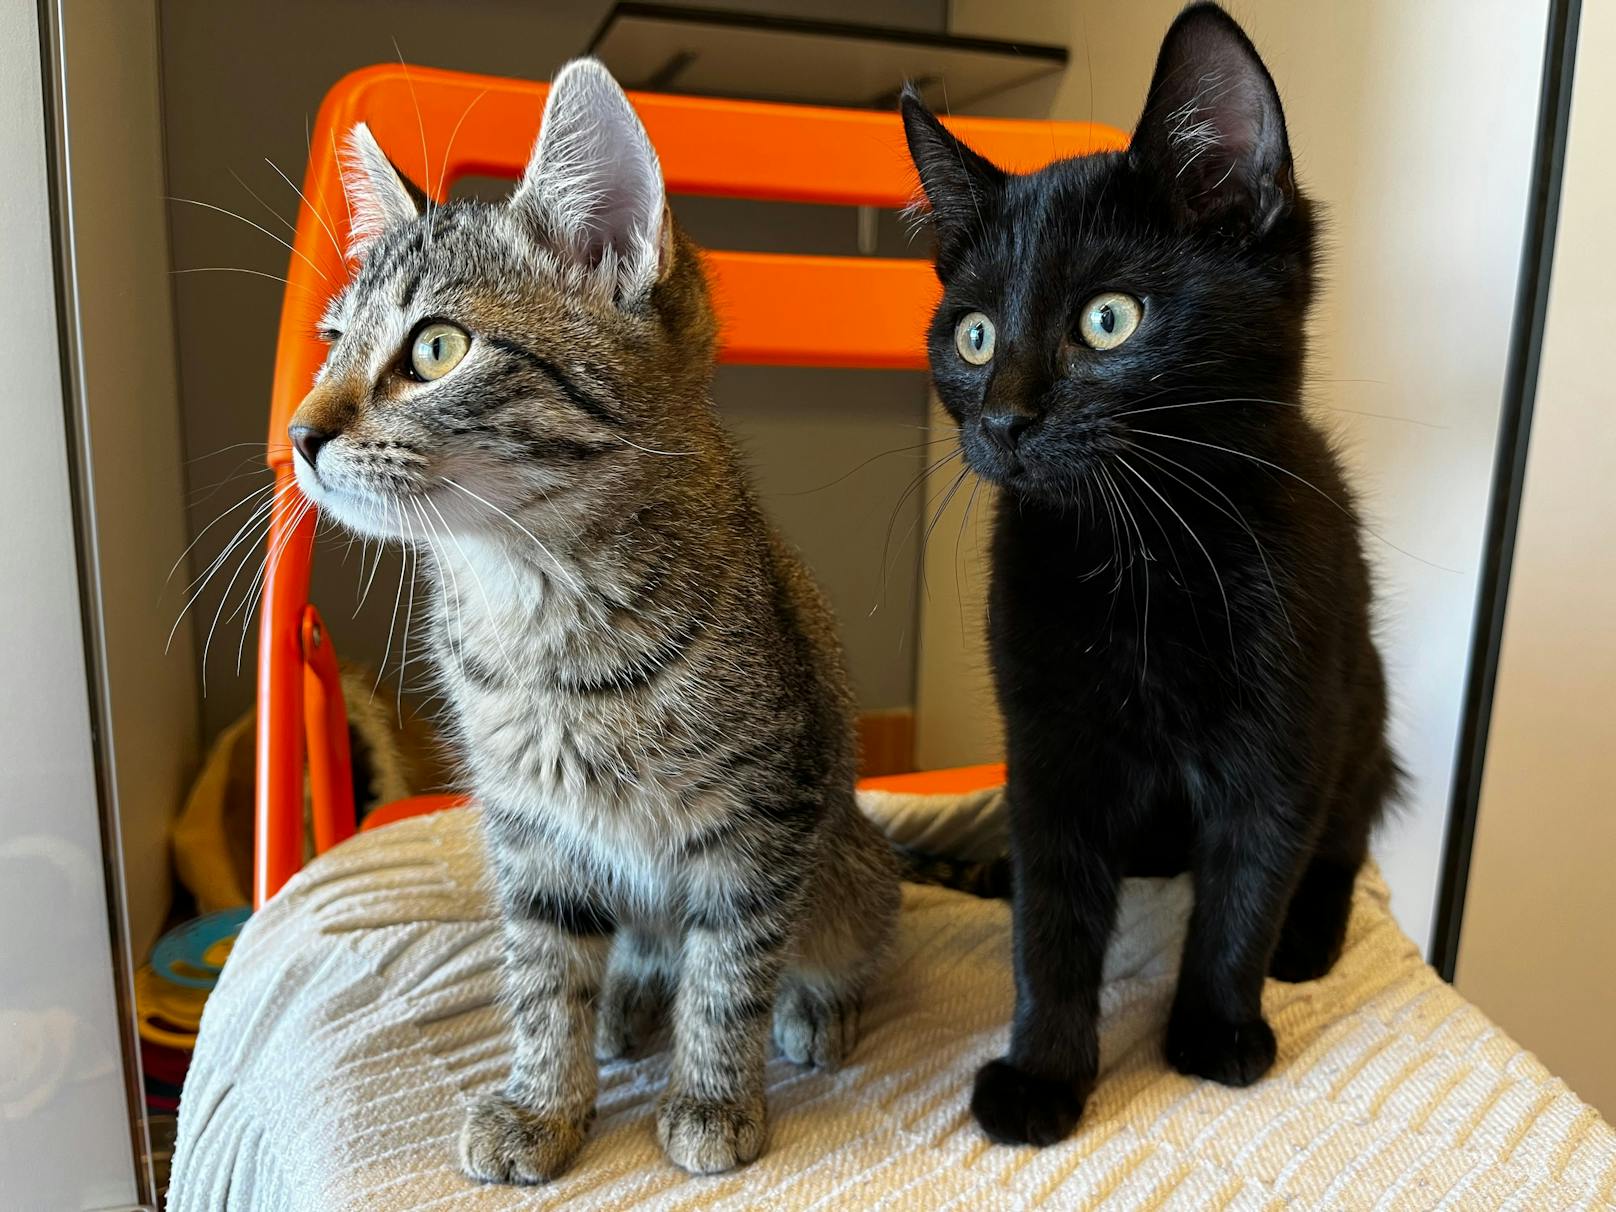 Bis zum Eintreffen der Tierrettung konnten die Finder das Babykatzen-Duo in einer umfunktionierten Katzentoilette sichern und so vor dem sicheren Tod bewahren